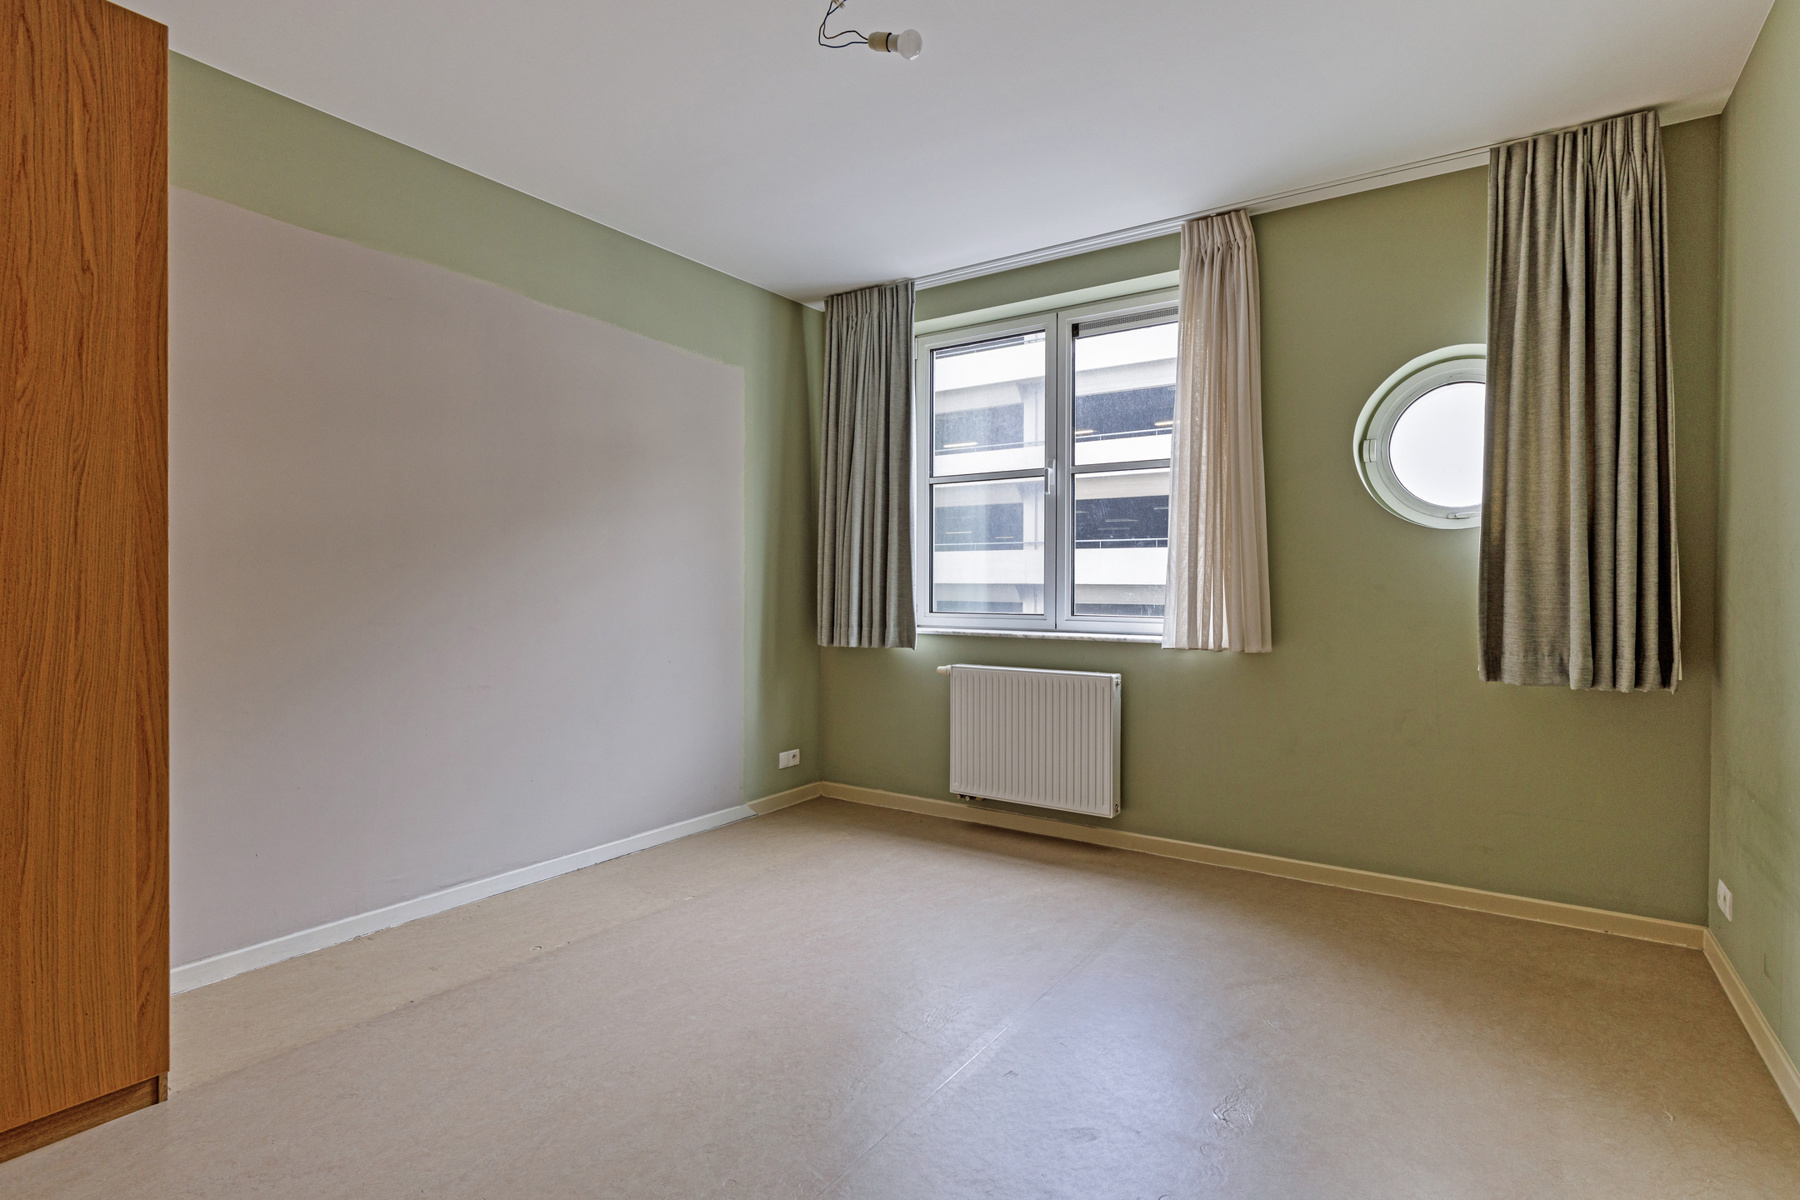 2 slaapkamer appartement met ruim terras in centrum Brussel foto 9